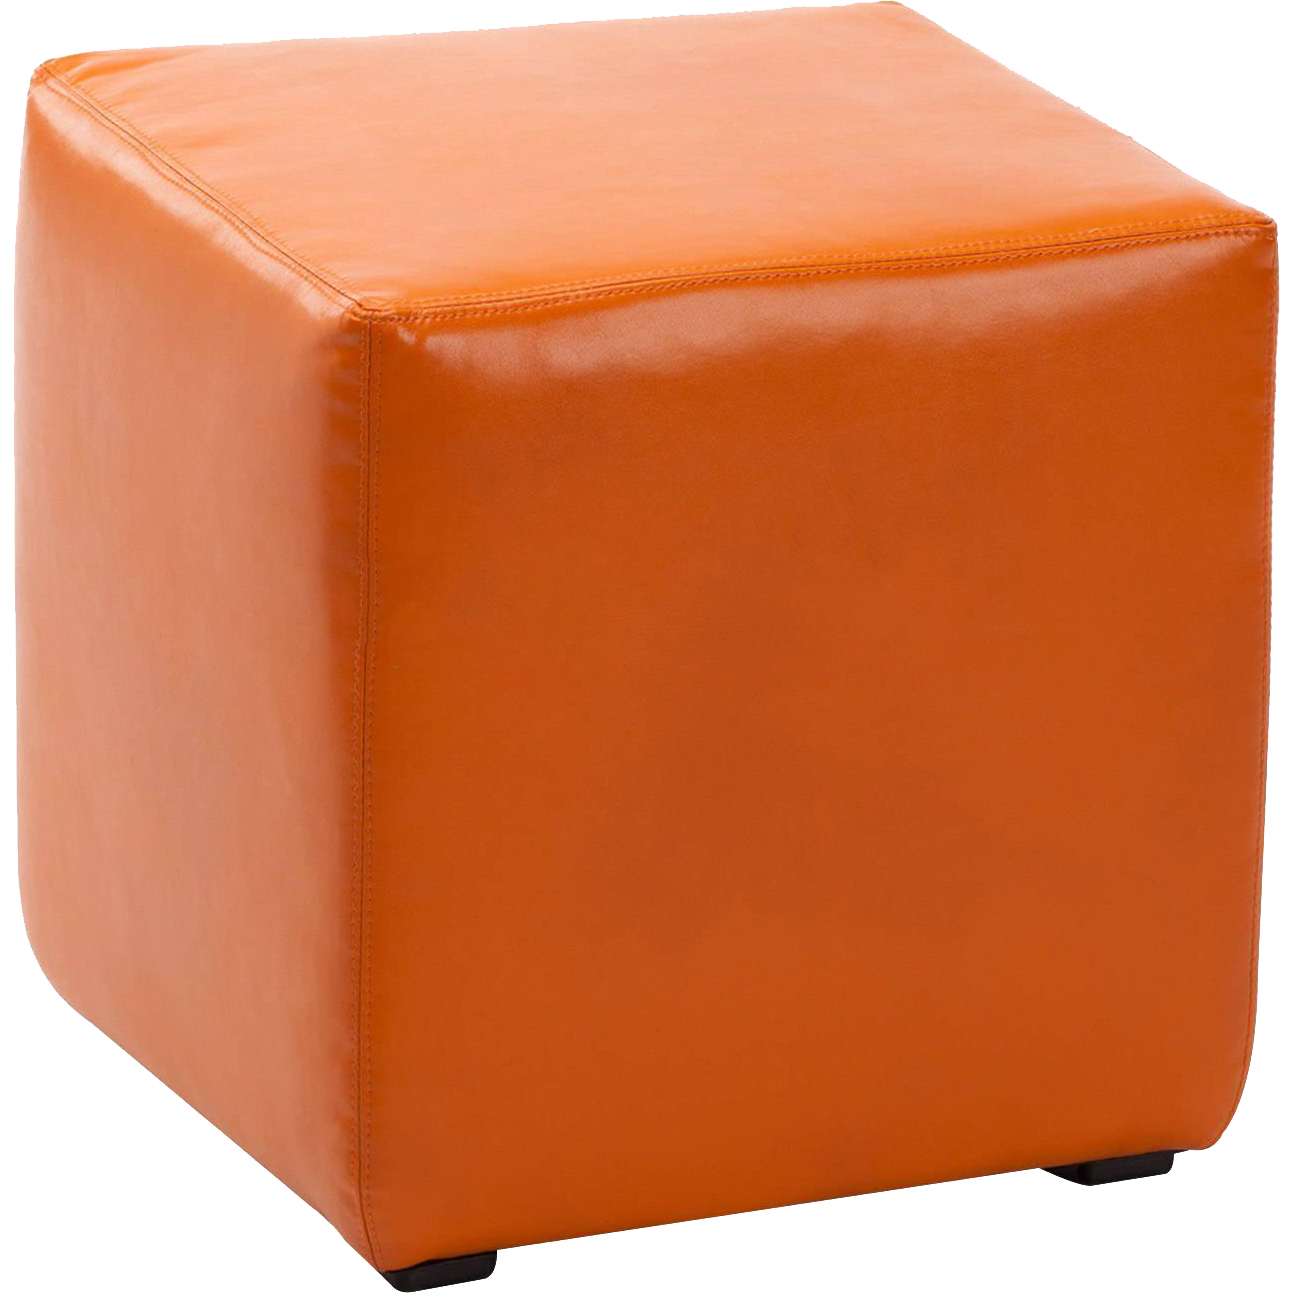 Пуфик Vental пф-4 оранжевый - фото 1